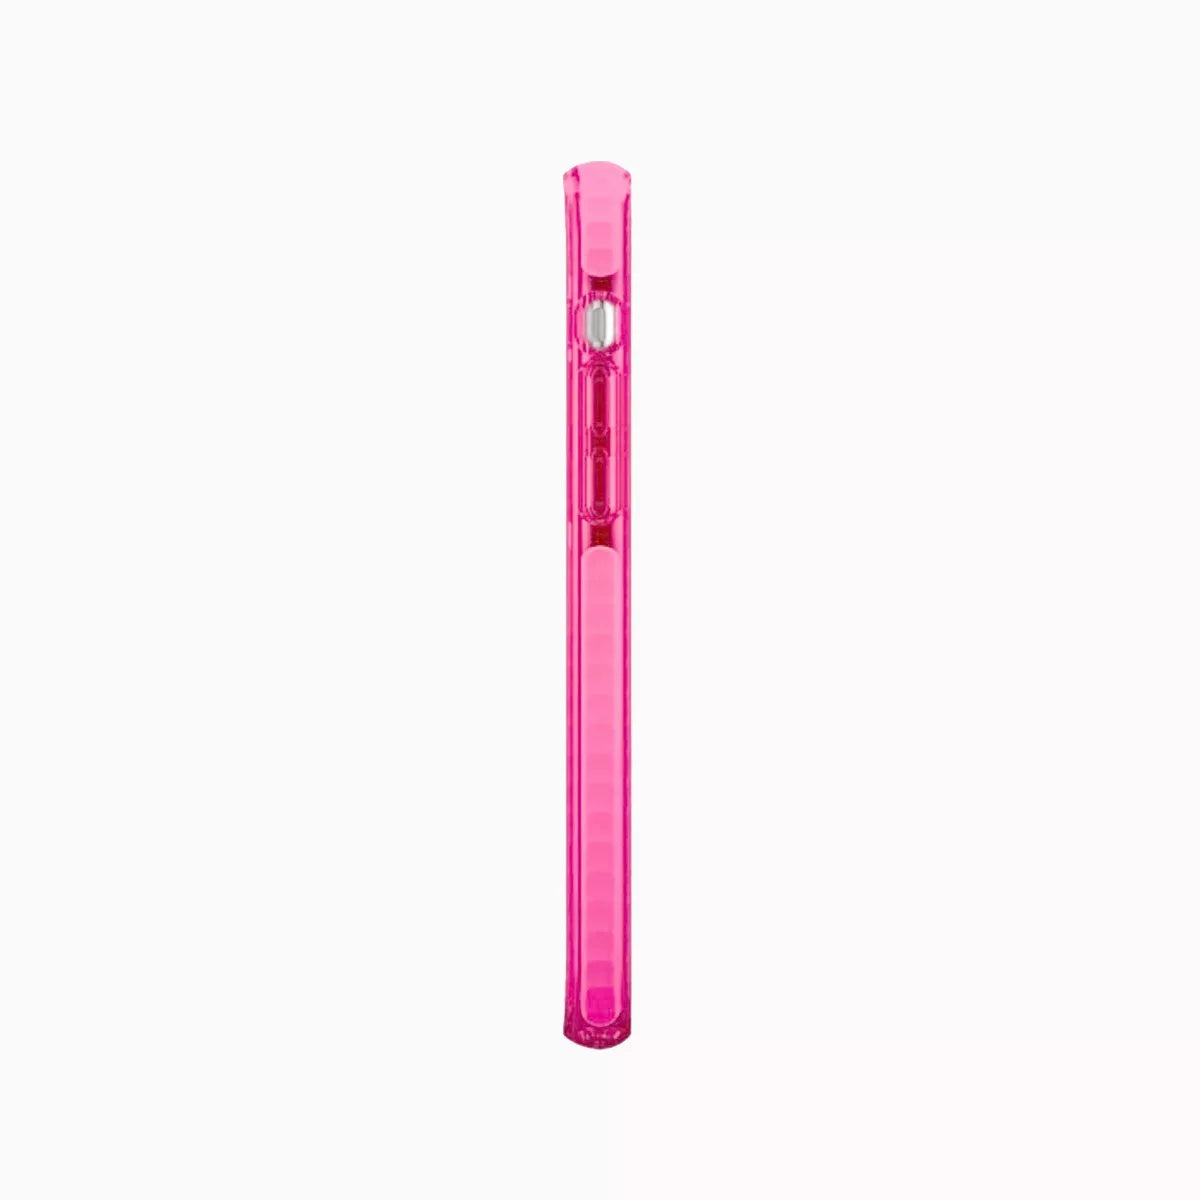 Carcasa rosada para iPhone